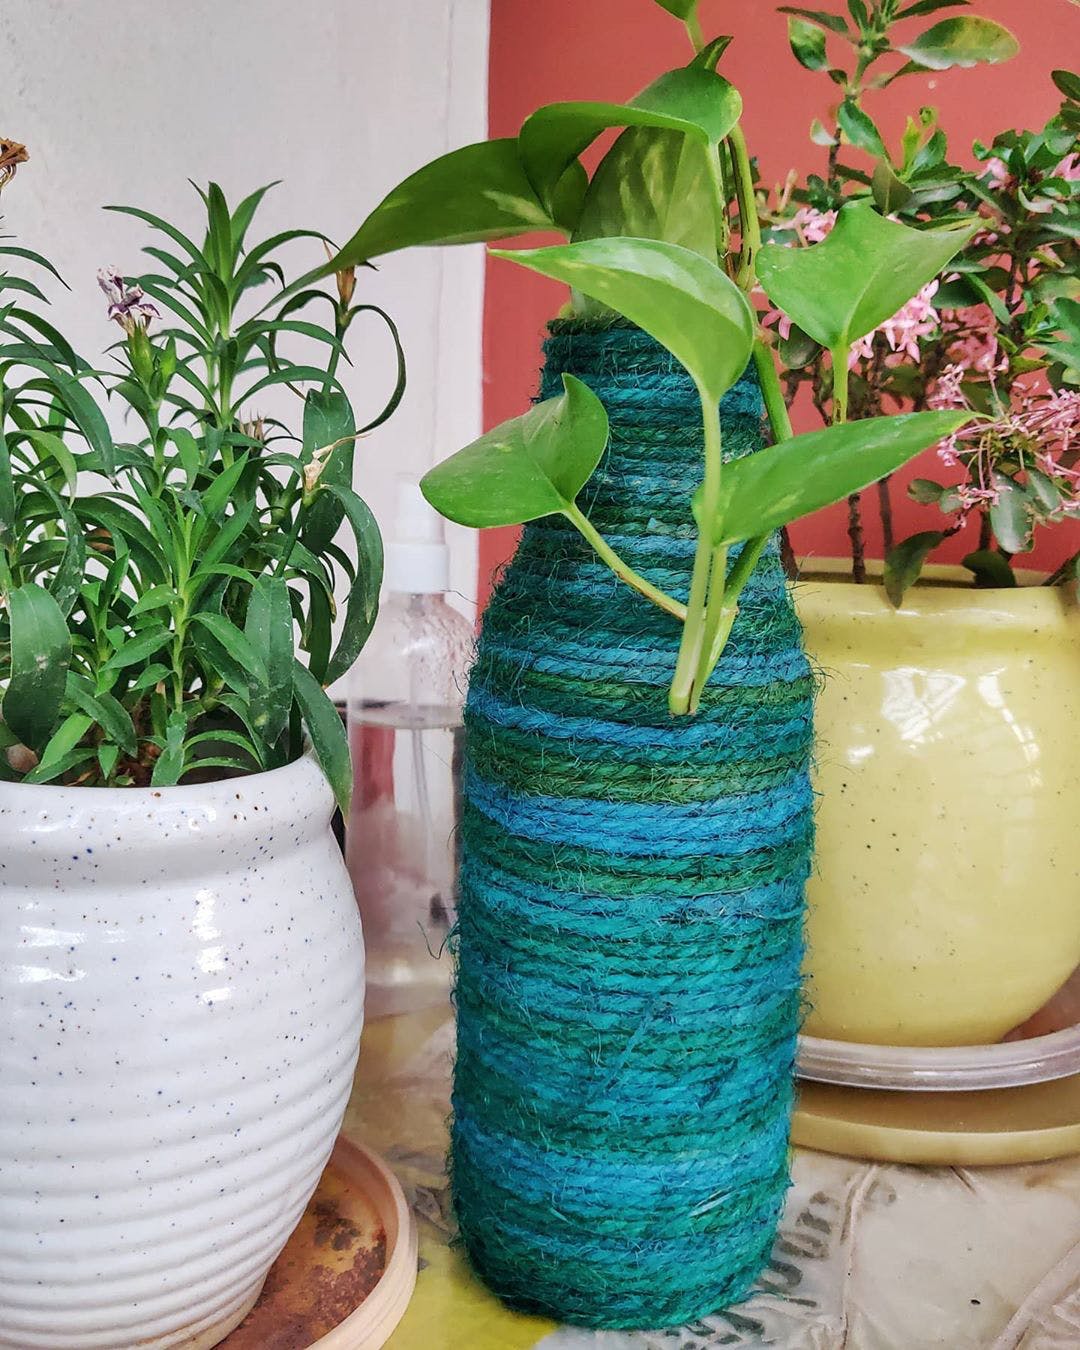 Flowerpot,Houseplant,Plant,Flower,Vase,Herb